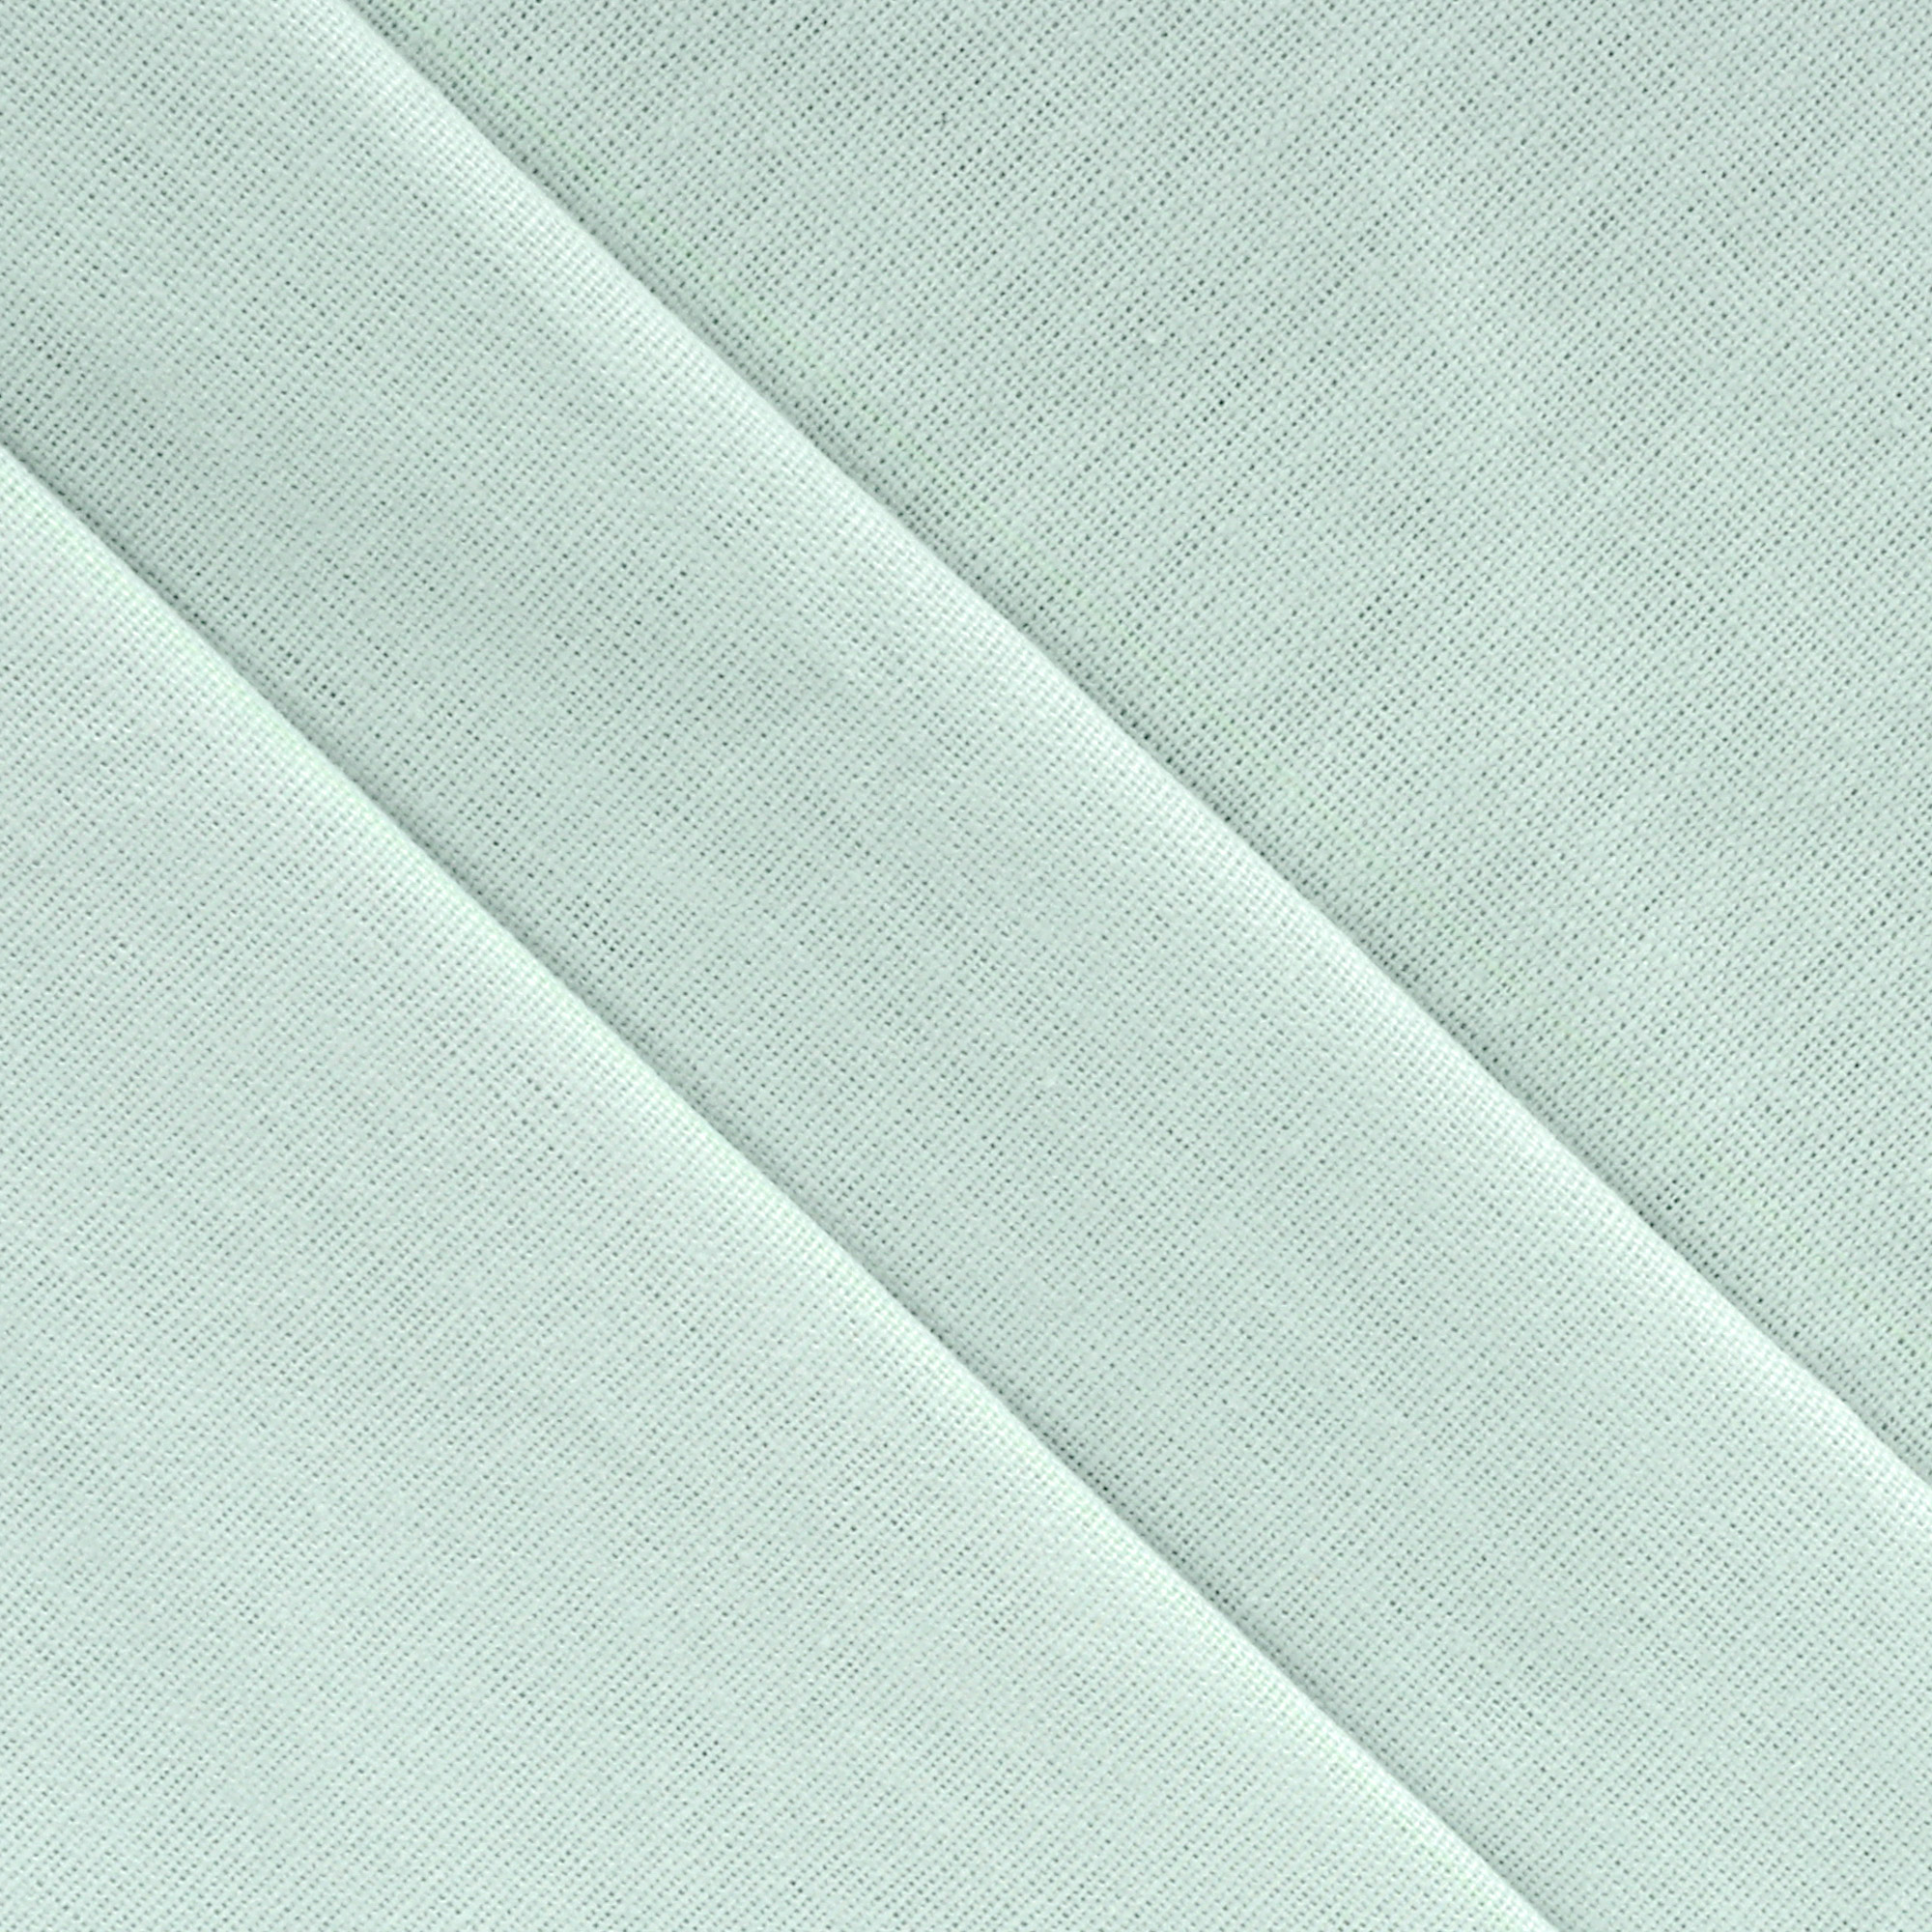 Комплект постельного белья La Besse Ранфорс мятный Кинг сайз, размер Кинг сайз - фото 3